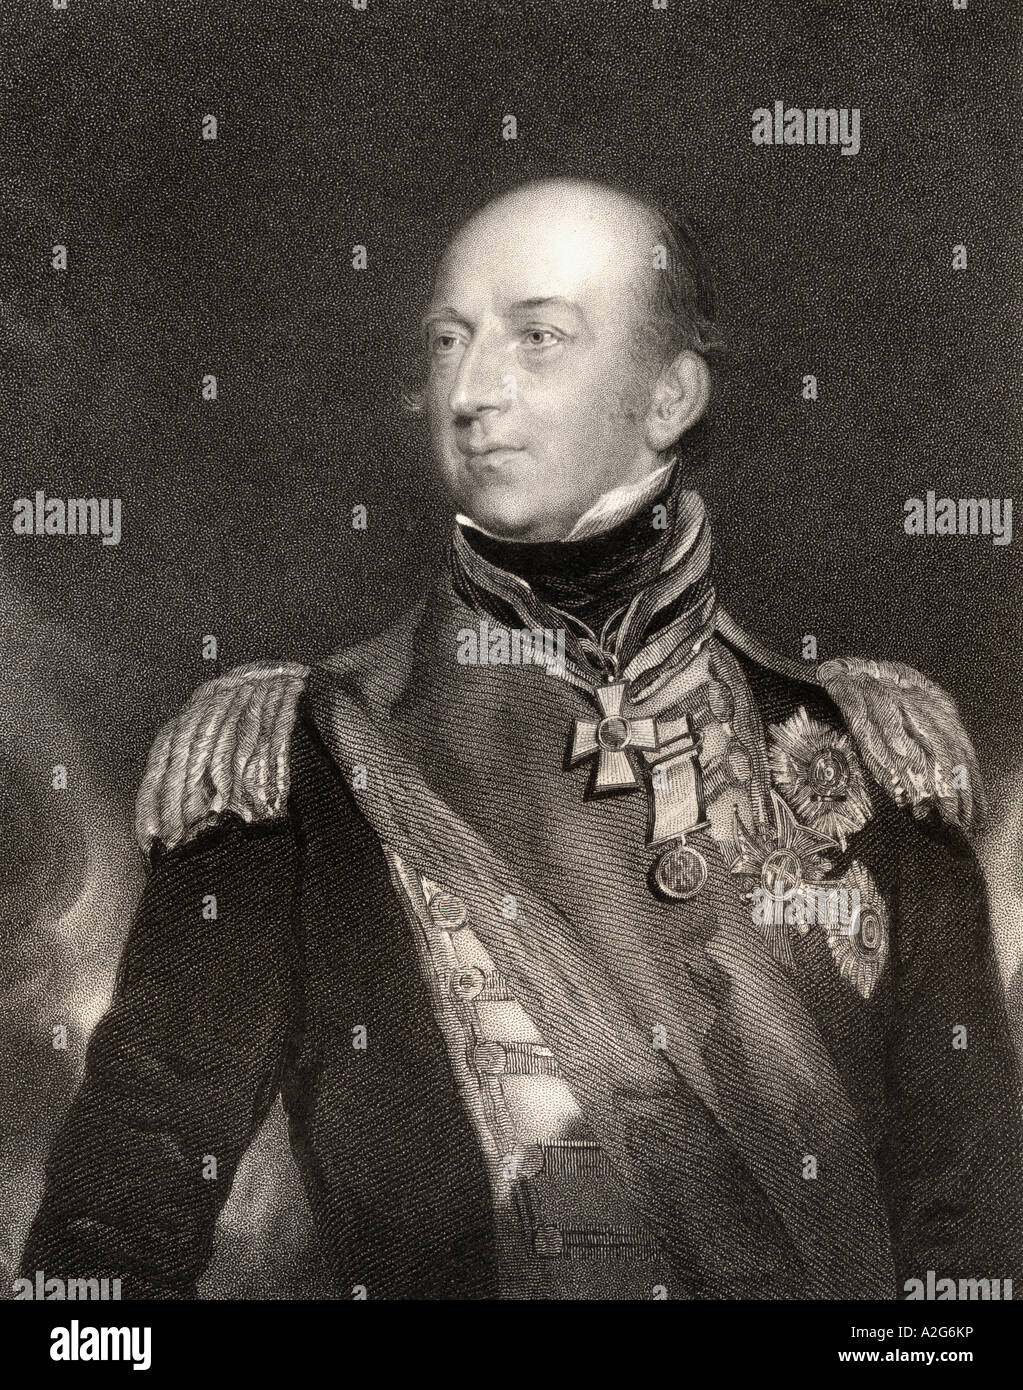 Sir Edward Codrington, Zwischen 1770 Und 1851. Britischer Admiral, Held der Schlacht von Trafalgar und der Schlacht von Navarino. Stockfoto